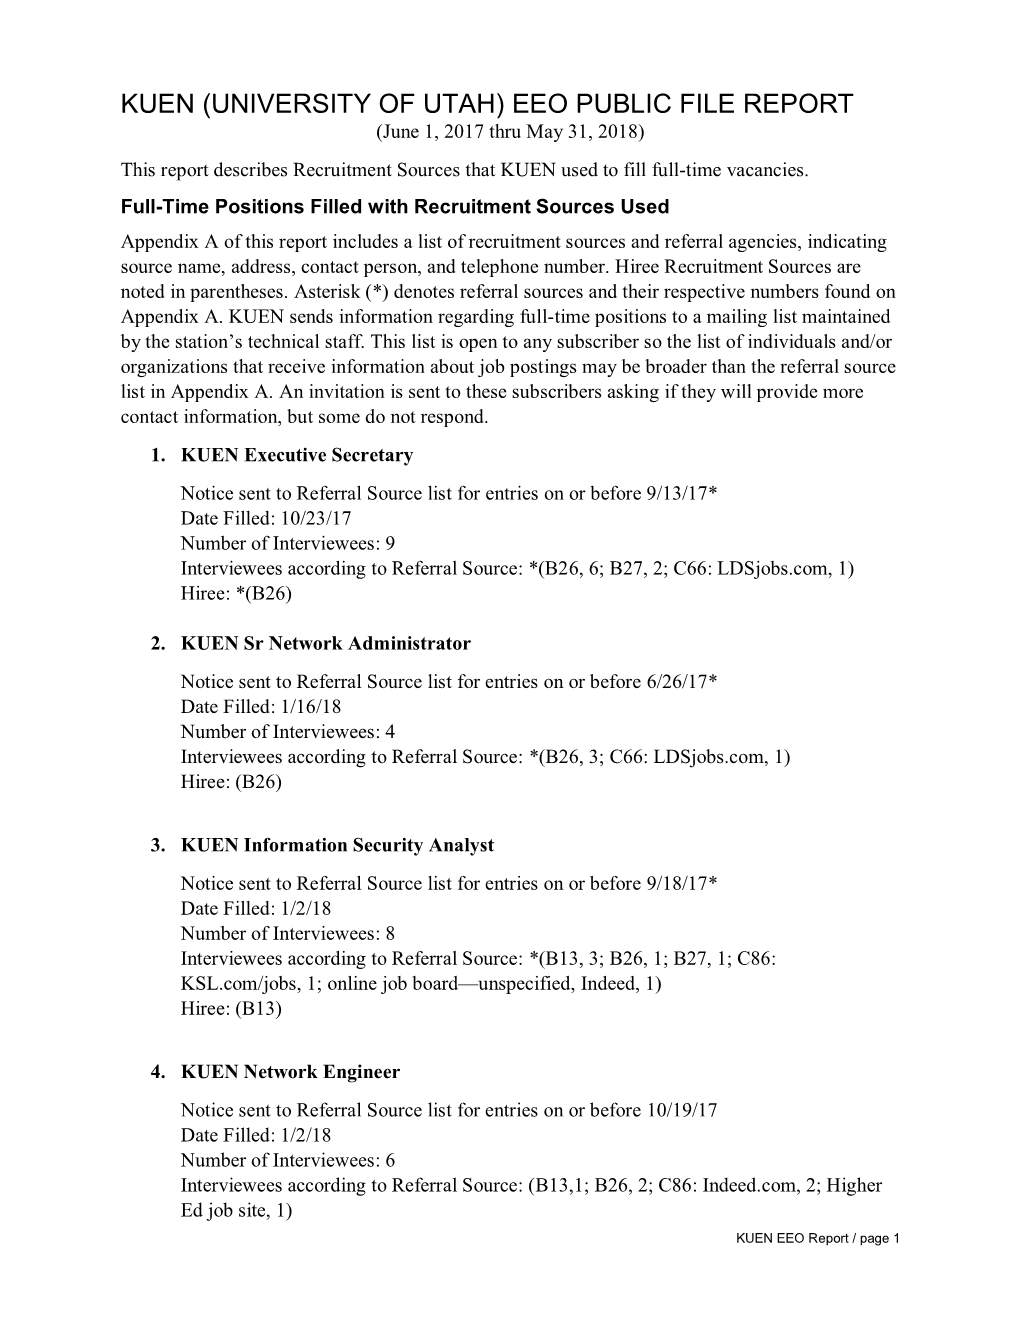 KUEN, EEO Public File Report